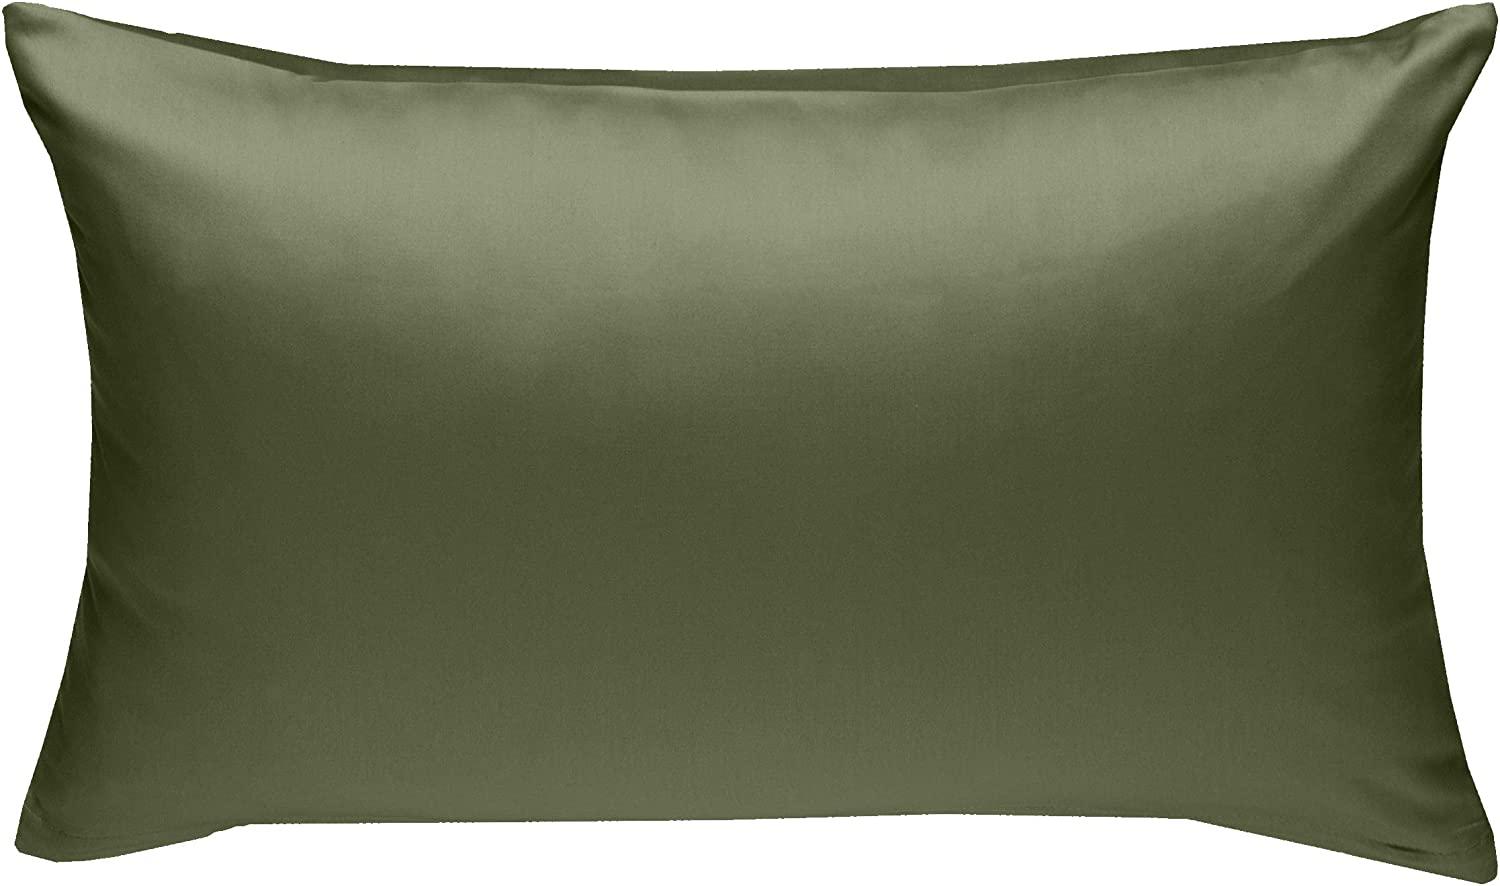 Bettwaesche-mit-Stil Mako-Satin / Baumwollsatin Bettwäsche uni / einfarbig dunkelgrün Kissenbezug 50x70 cm Bild 1